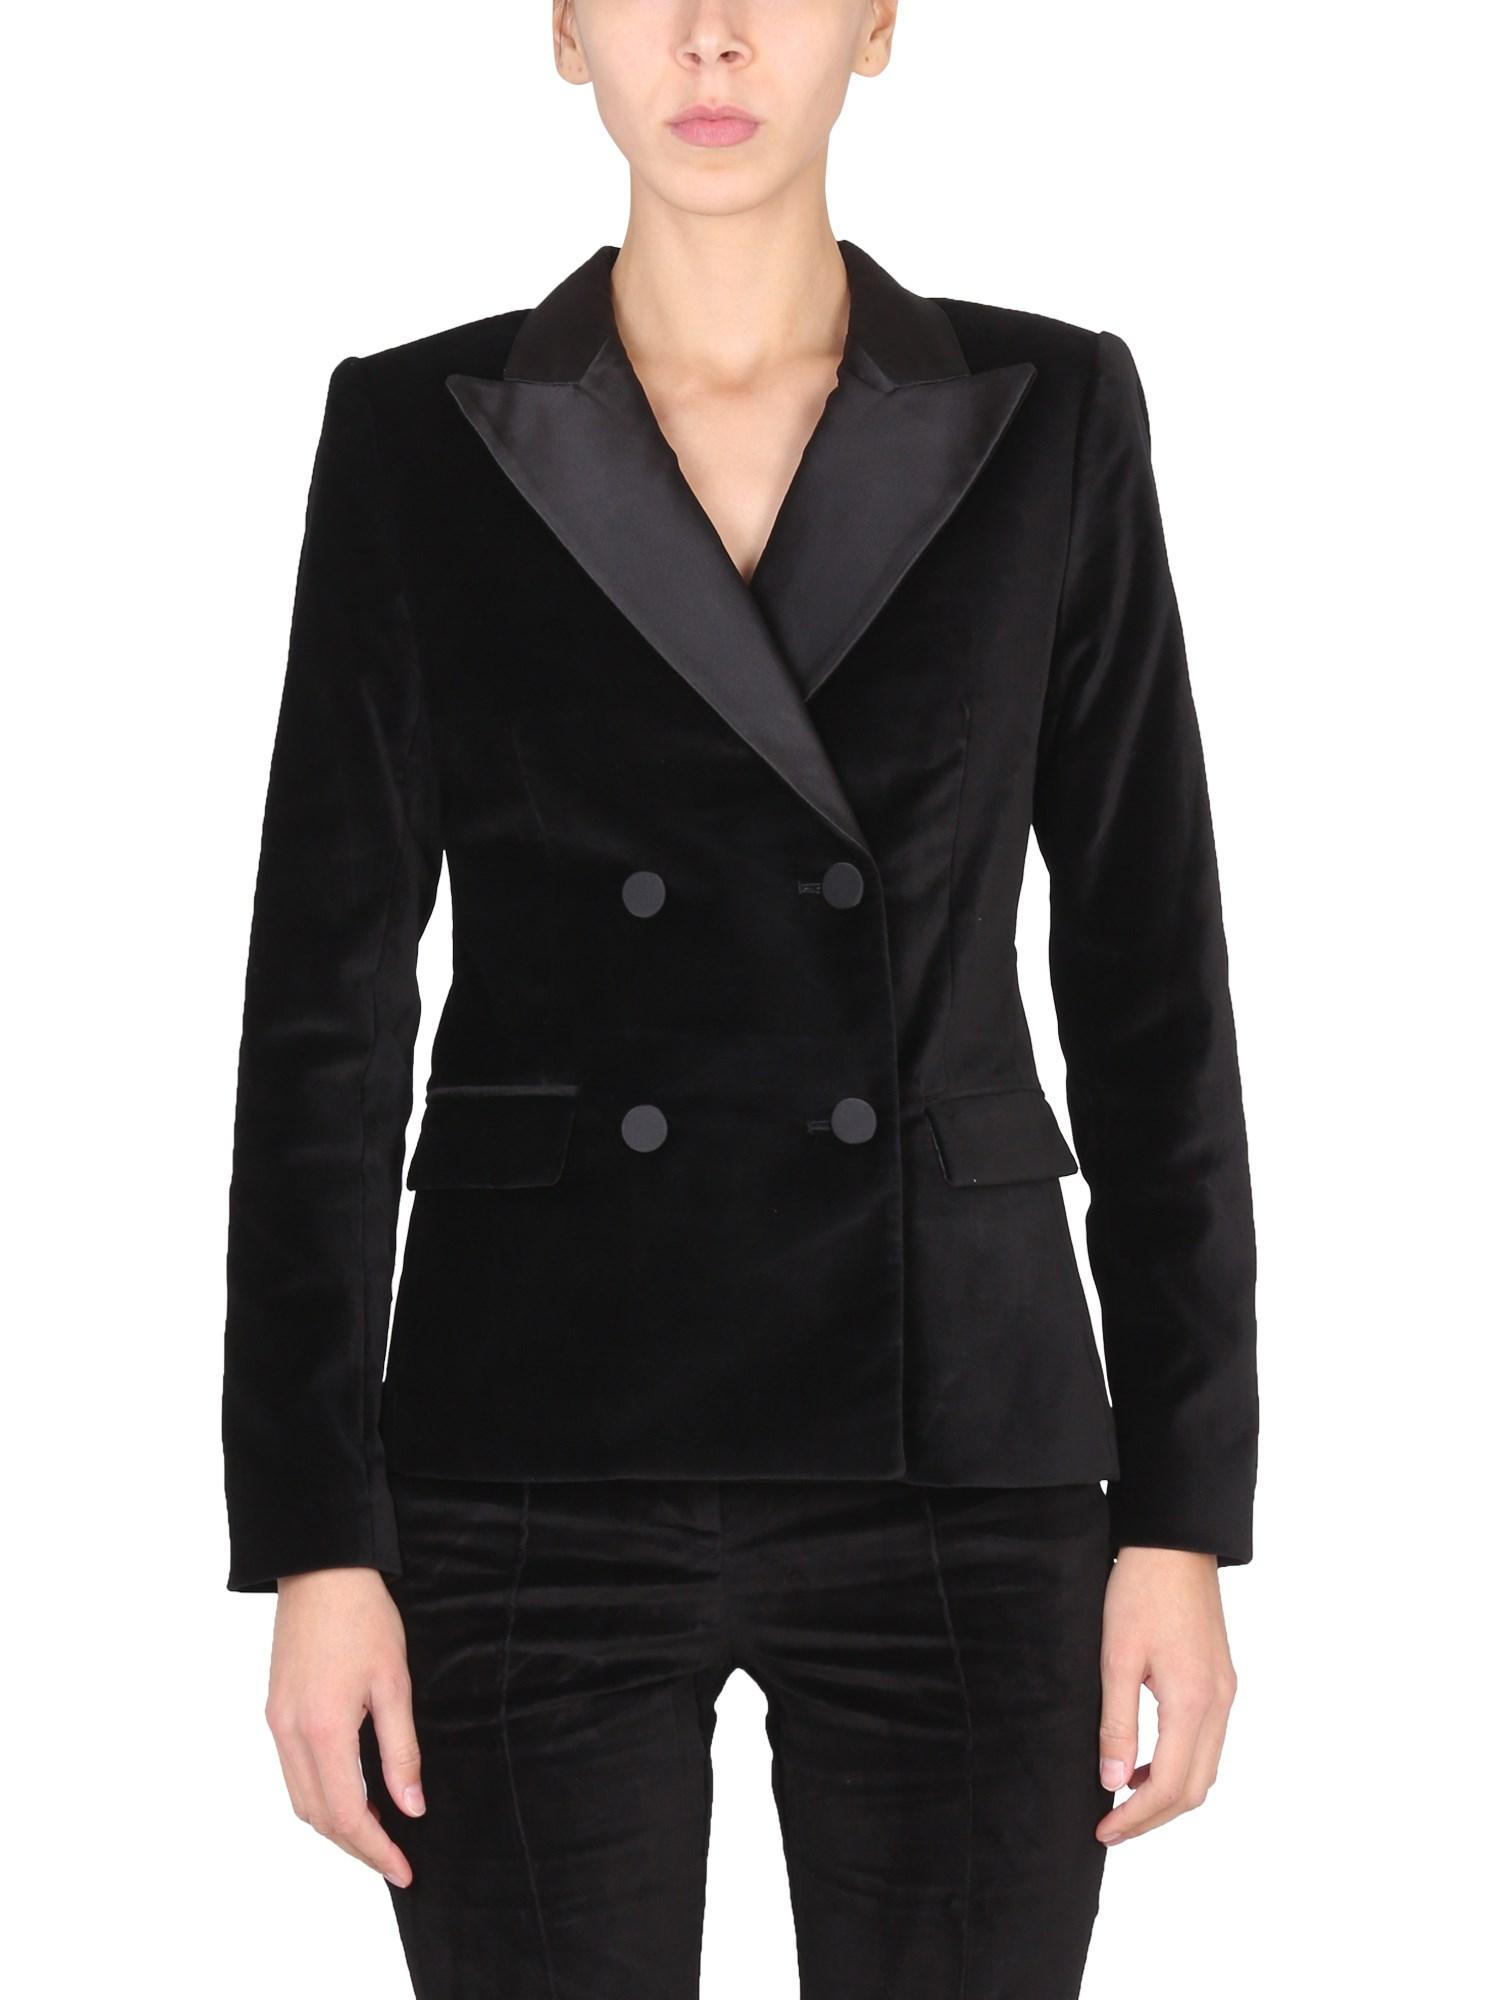 Michael Kors Velvet Jacket in Black | Lyst UK